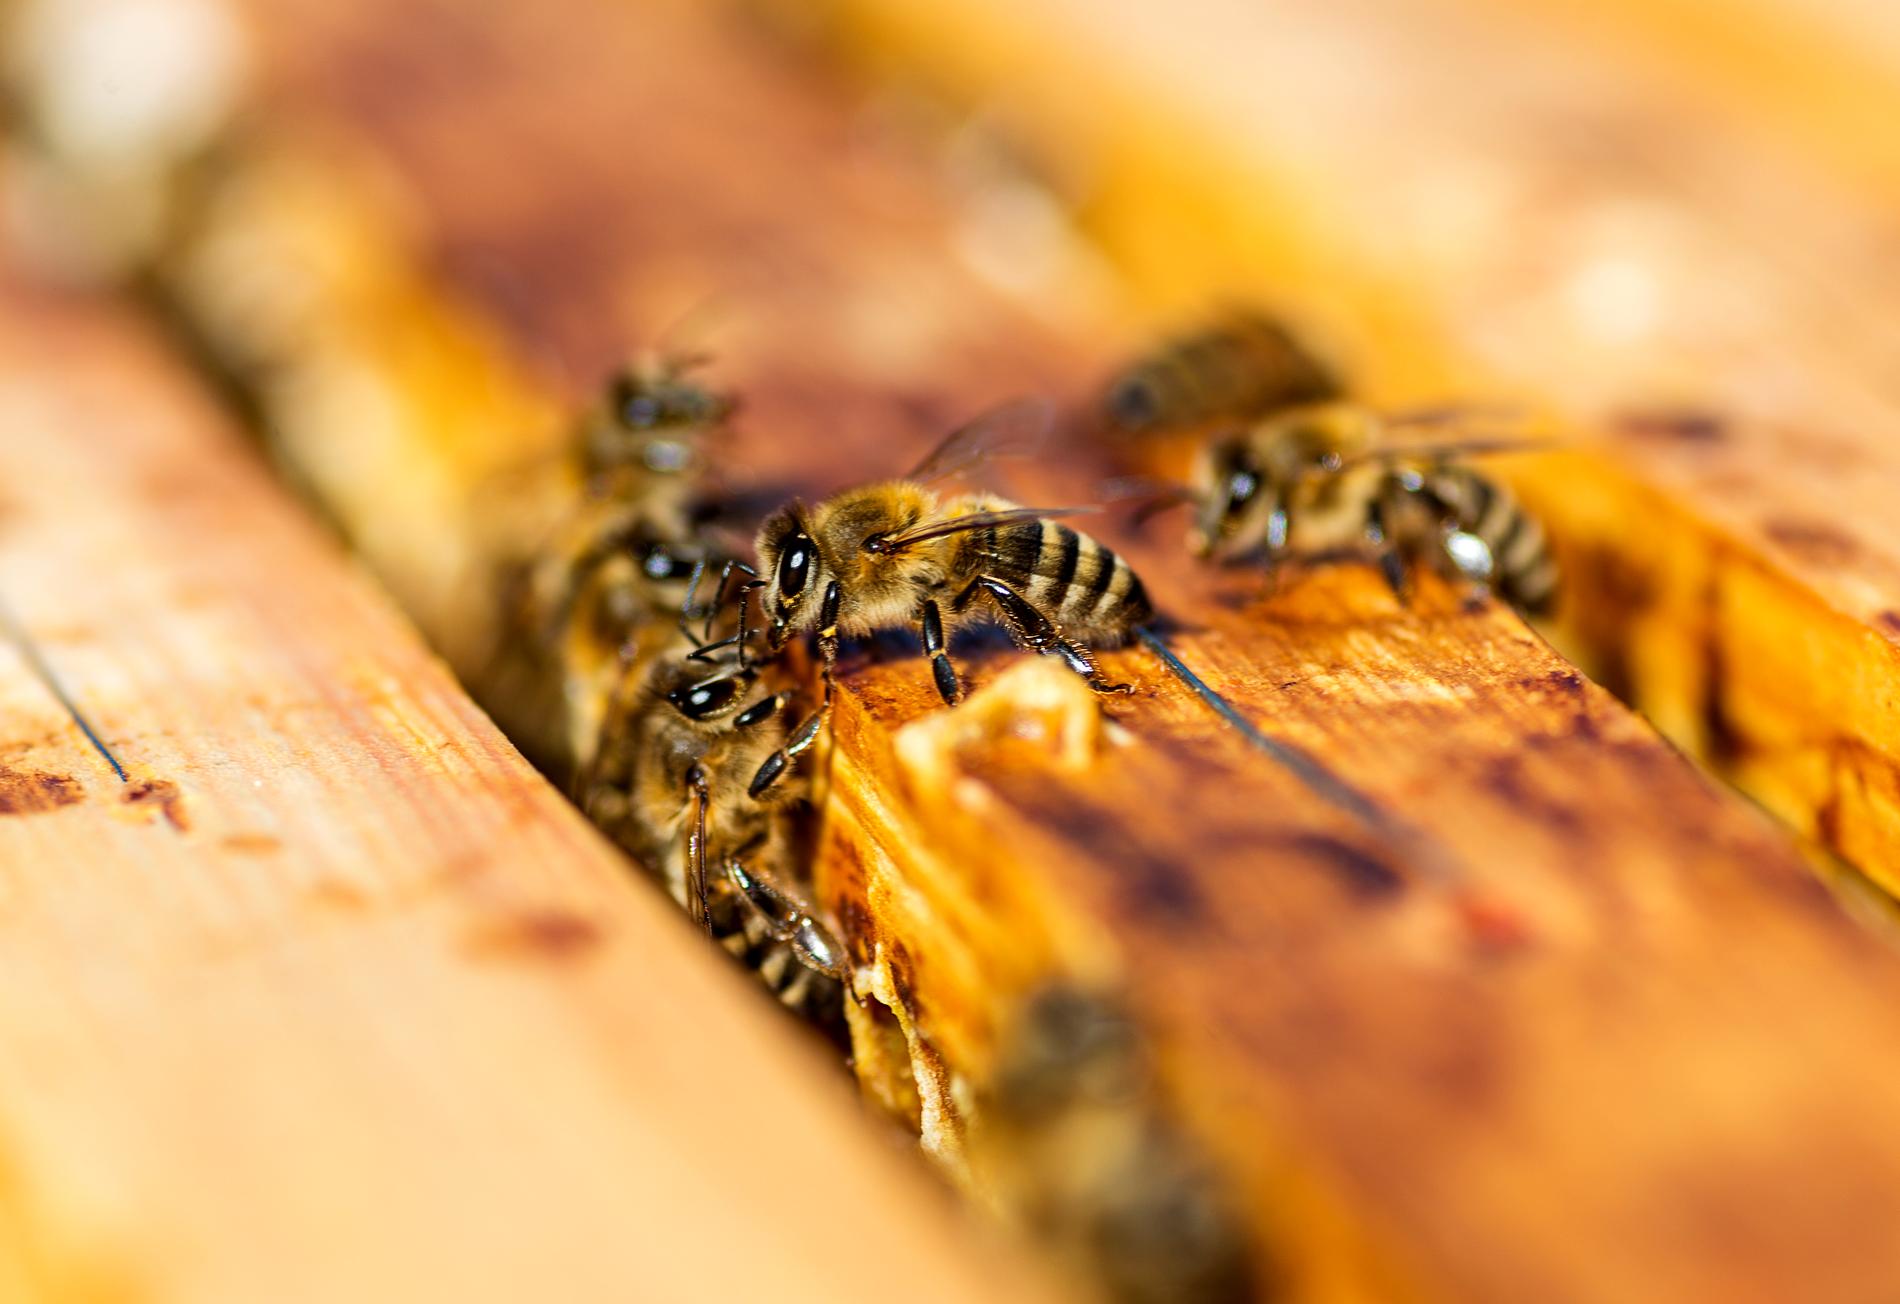 En halv miljon bin i Skåne har dött efter ett misstänkt sabotage.